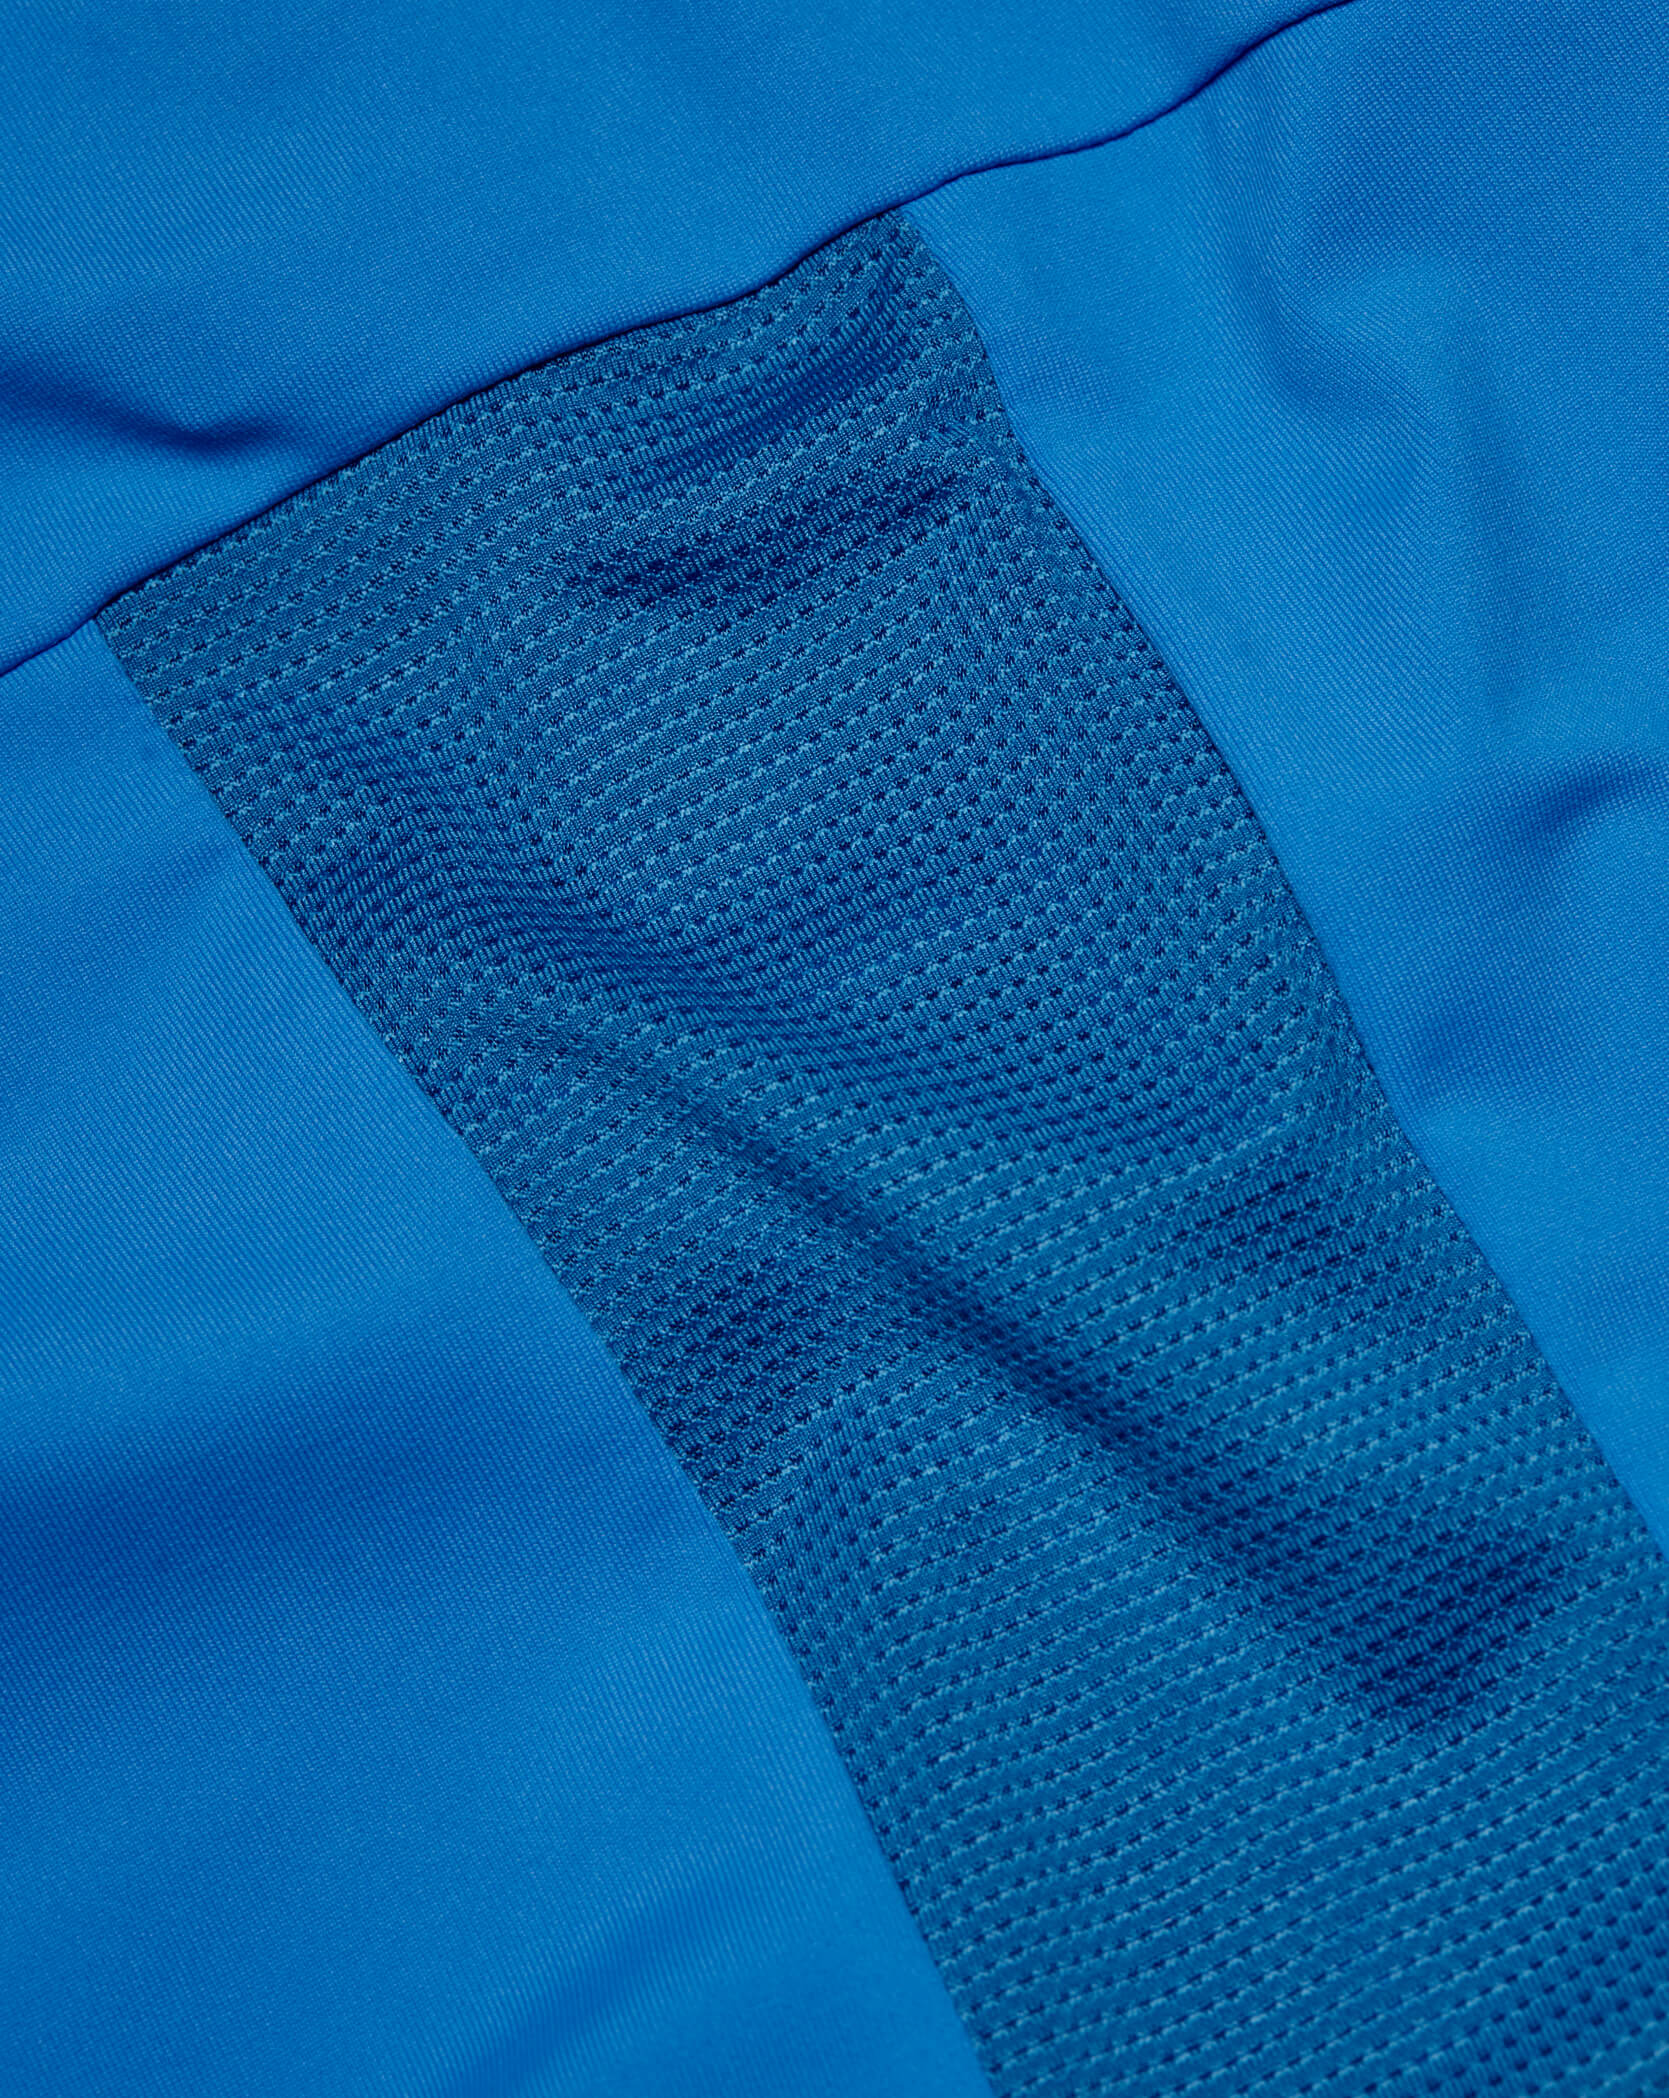 Blue Twinzz activewear zip top